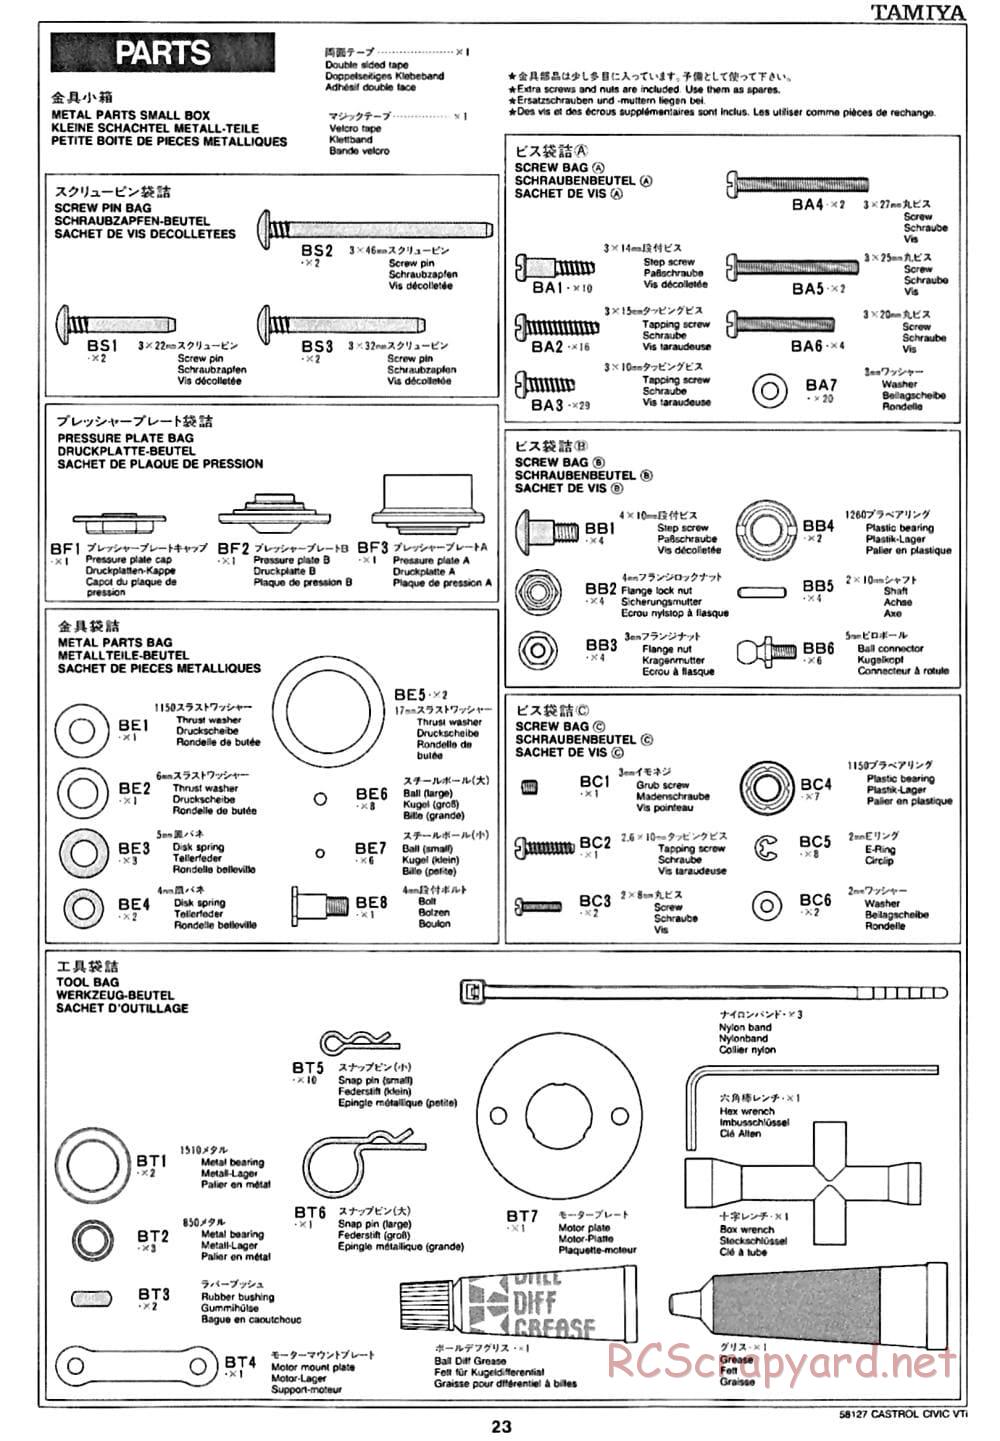 Tamiya - Castrol Honda Civic VTi - FF-01 Chassis - Manual - Page 23